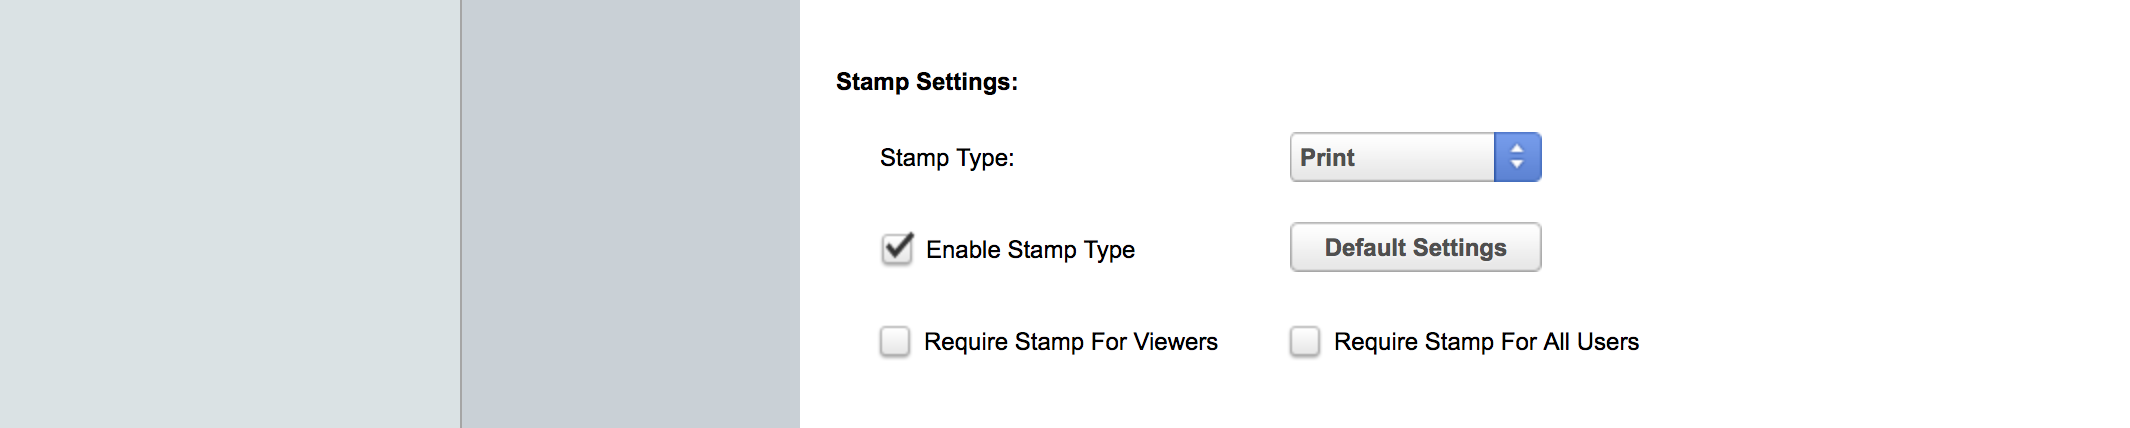 Print Stamp Settings